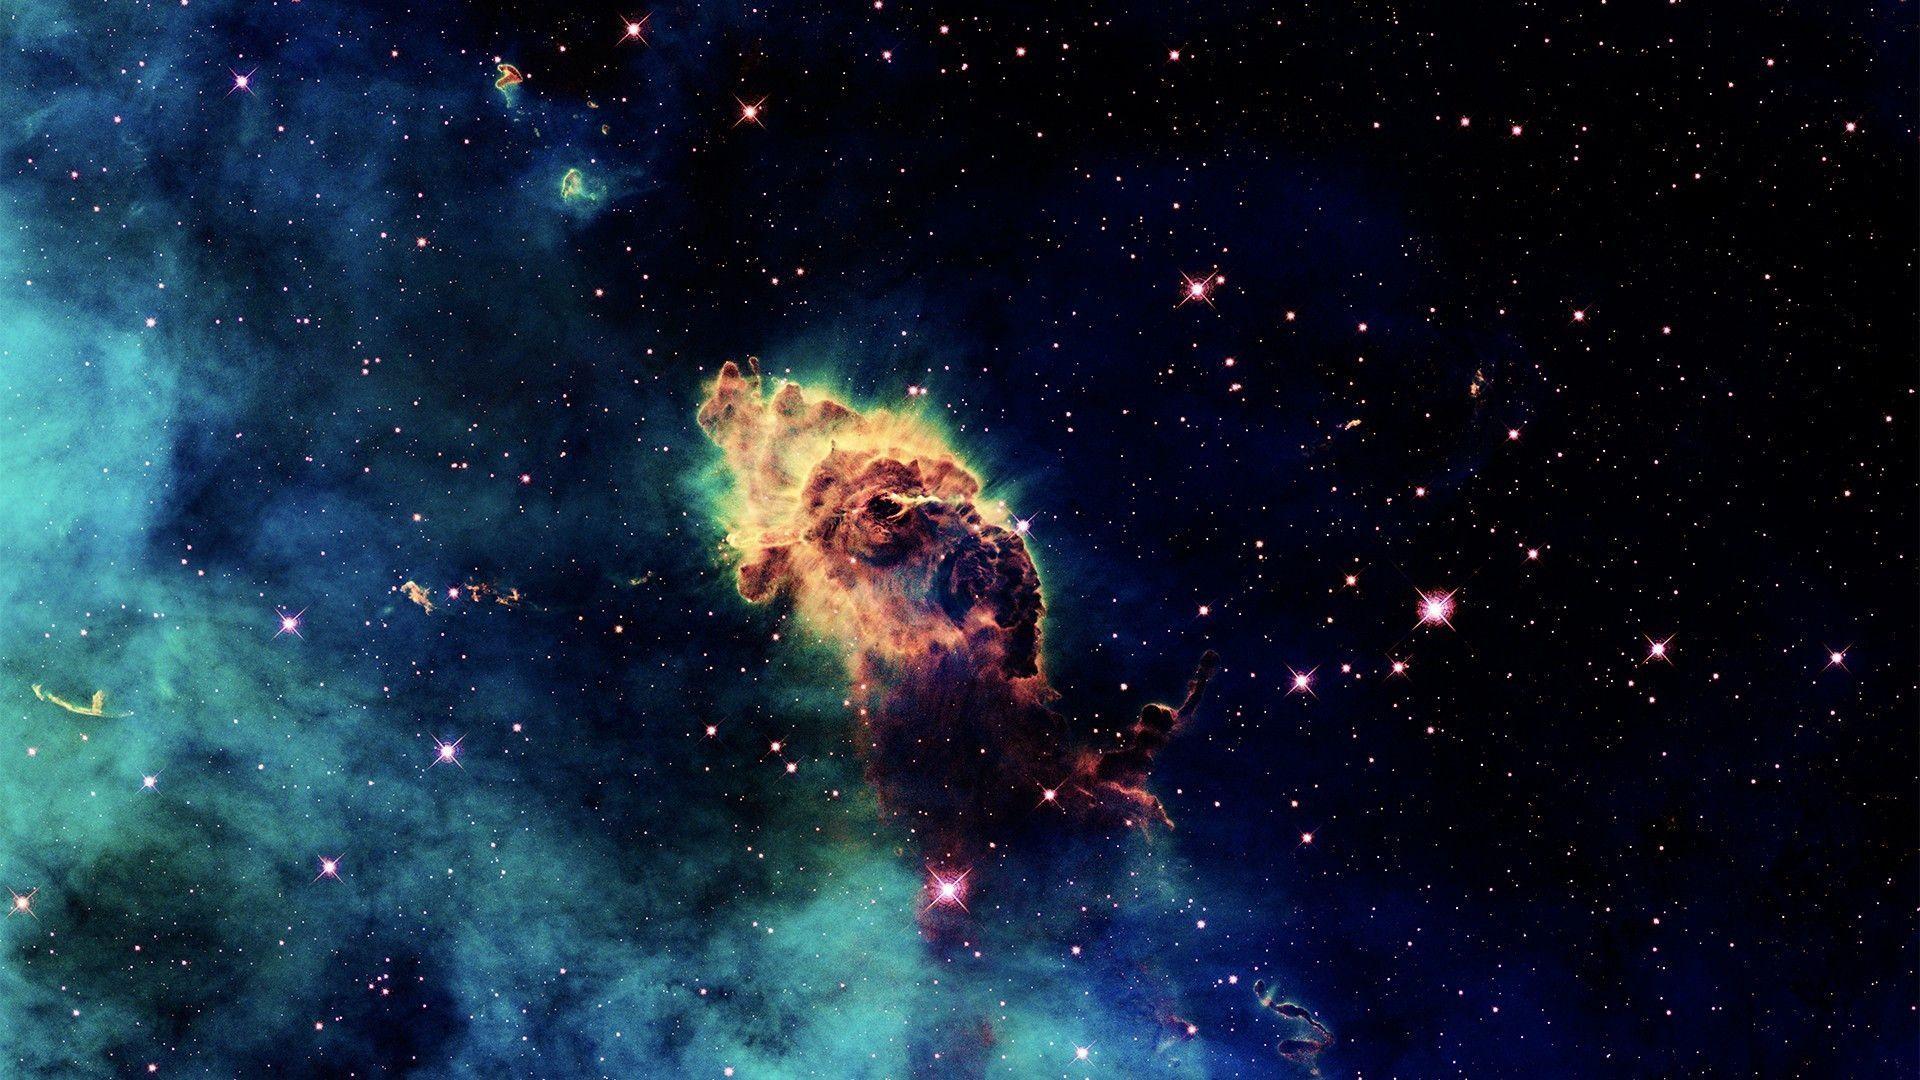 outer space stars nebulae astronomy Eagle nebula background photo